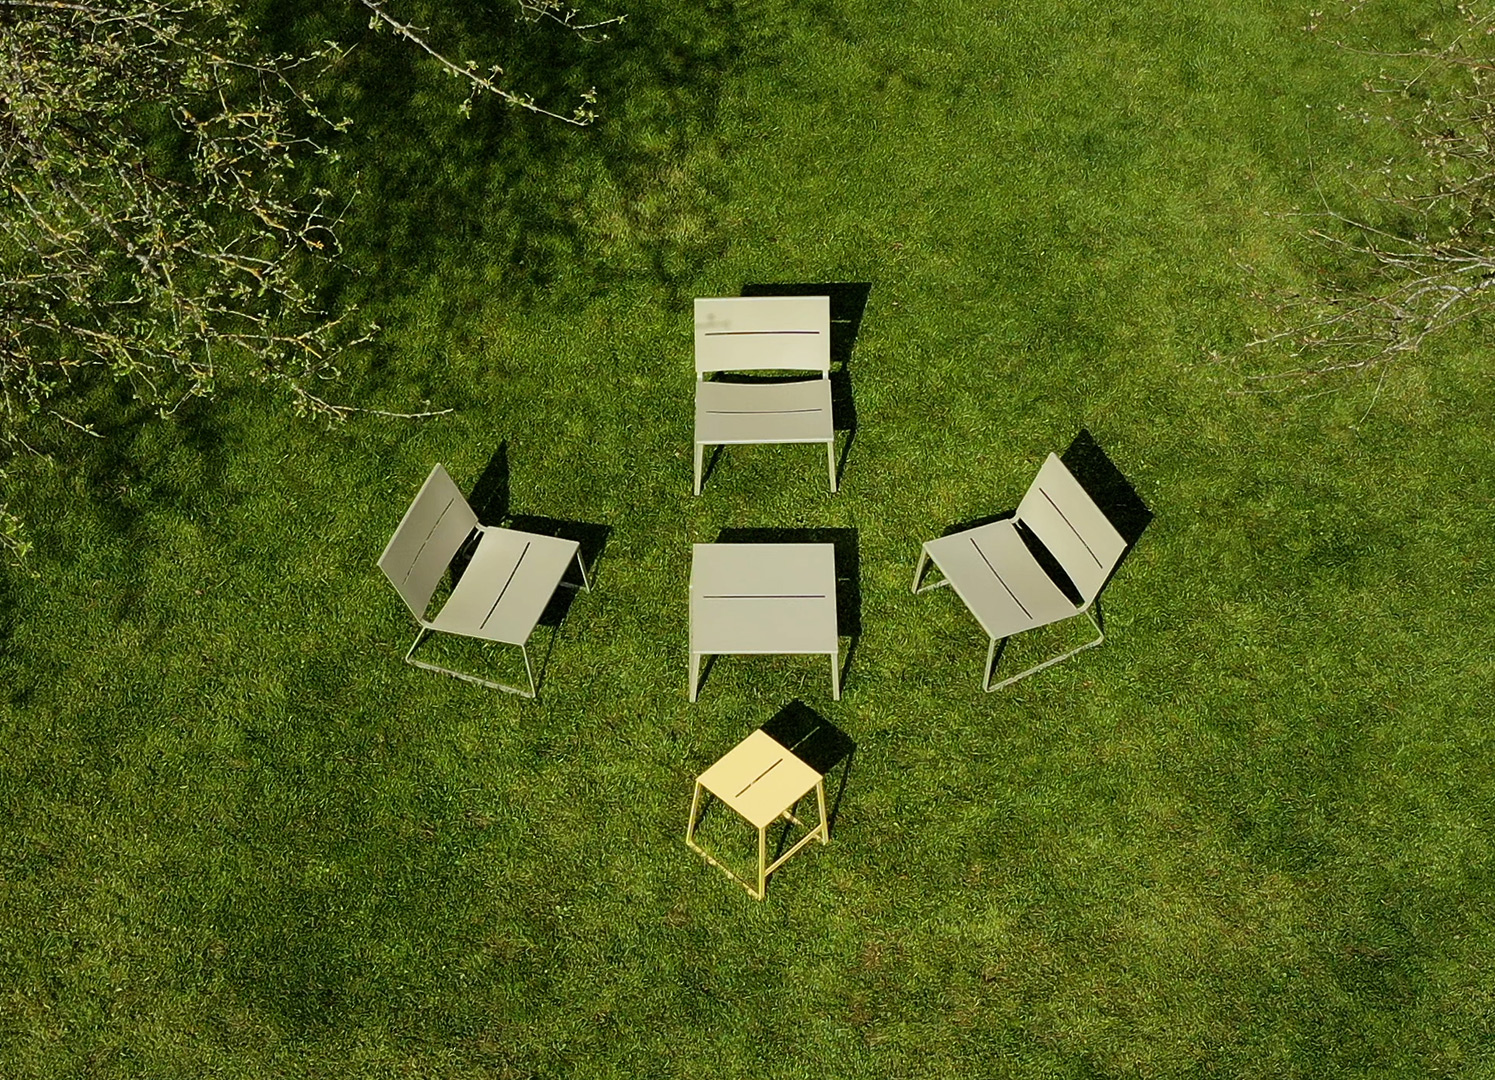 TERÄS loungebord og loungestole set fra oven med gul taburet